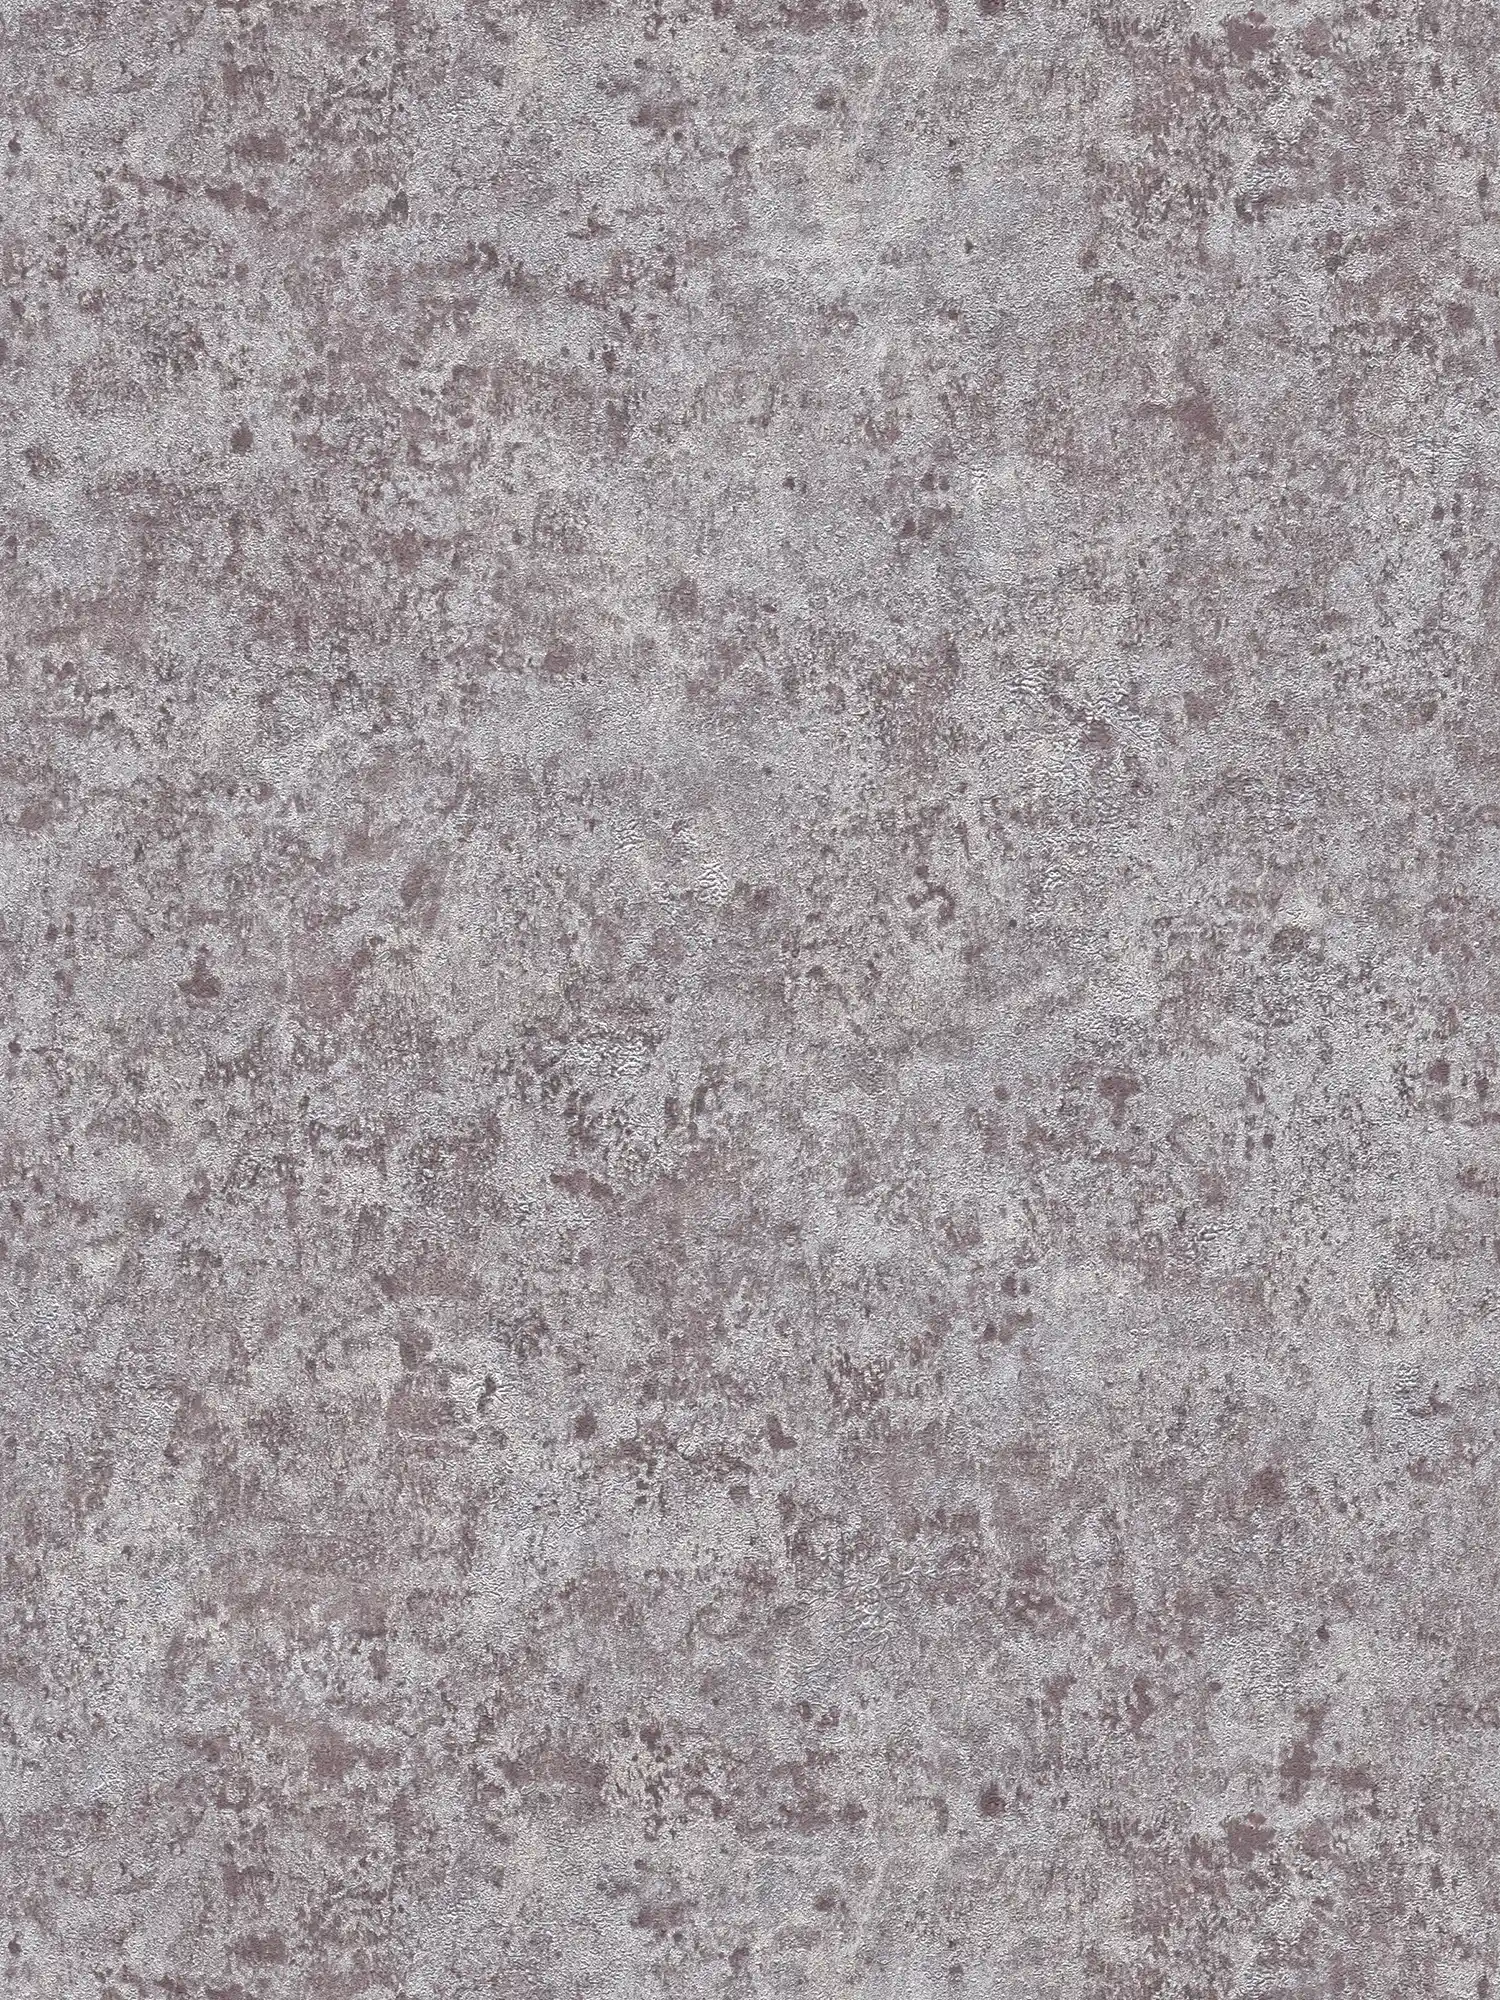 Papel pintado no tejido con efecto metálico brillante - gris, plata, marrón
